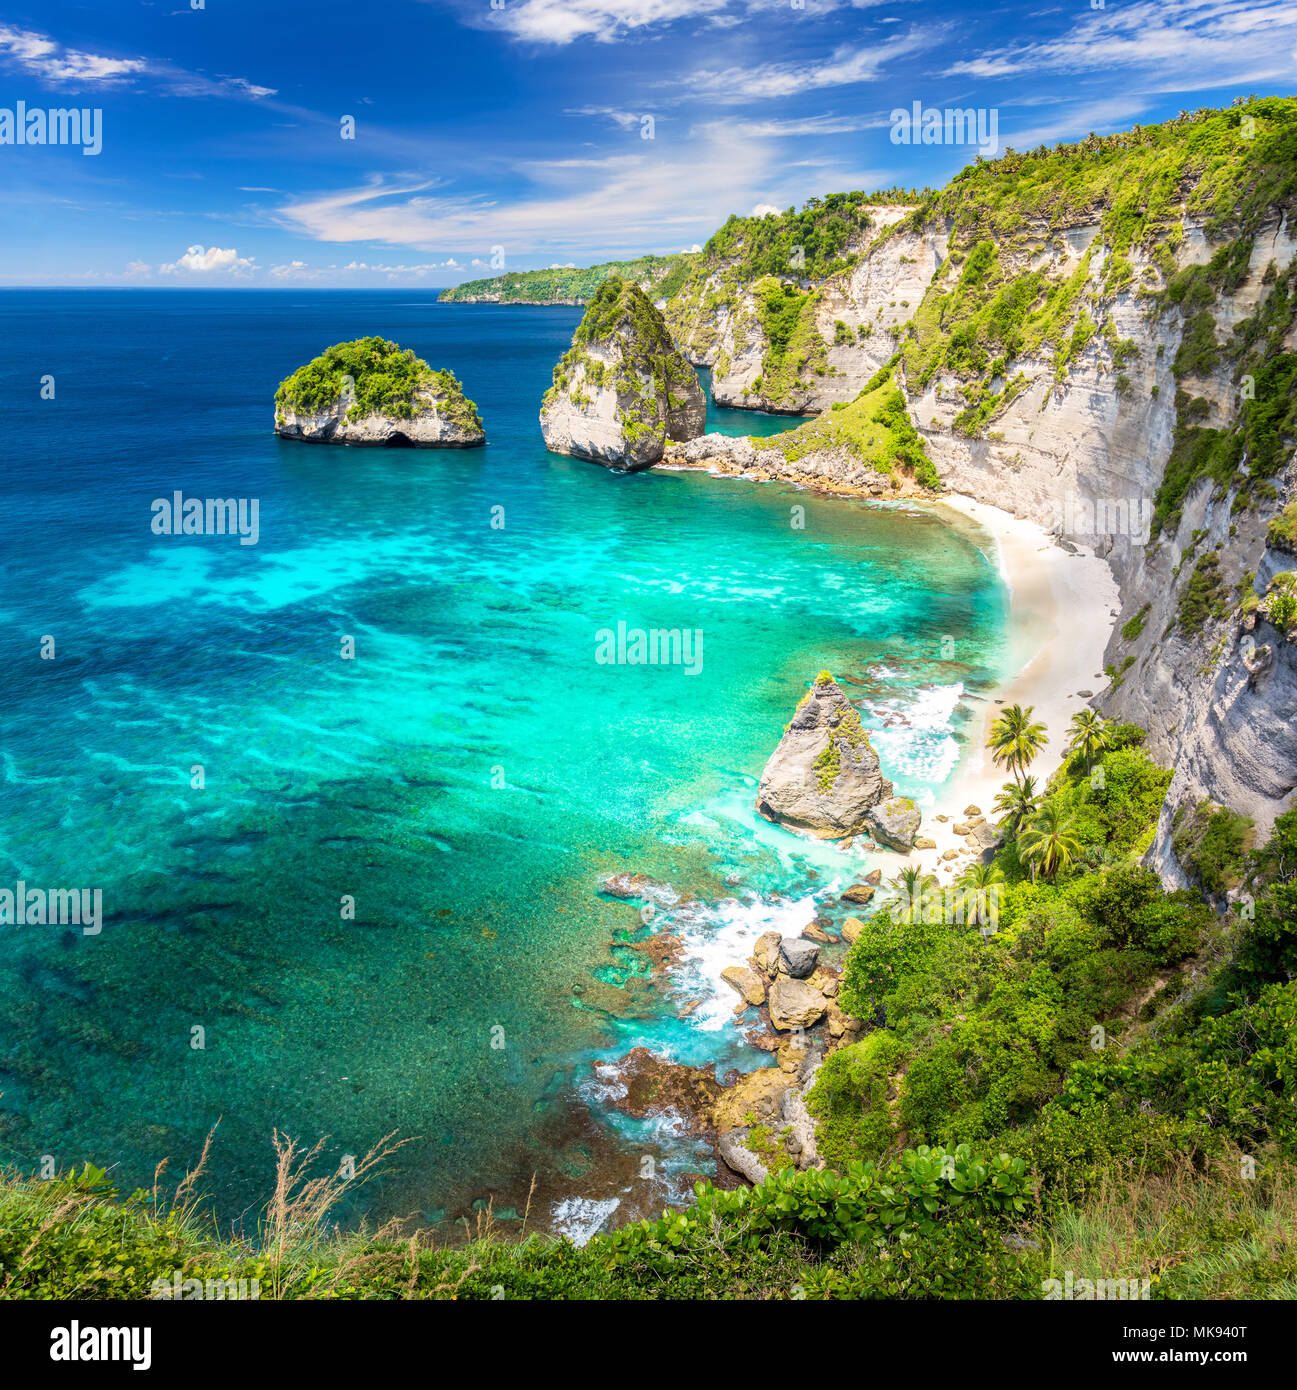 Incredibile isola tropicale con spiaggia sabbiosa, palme, reef e rocce, Nusa Penida, Indonesia Foto Stock